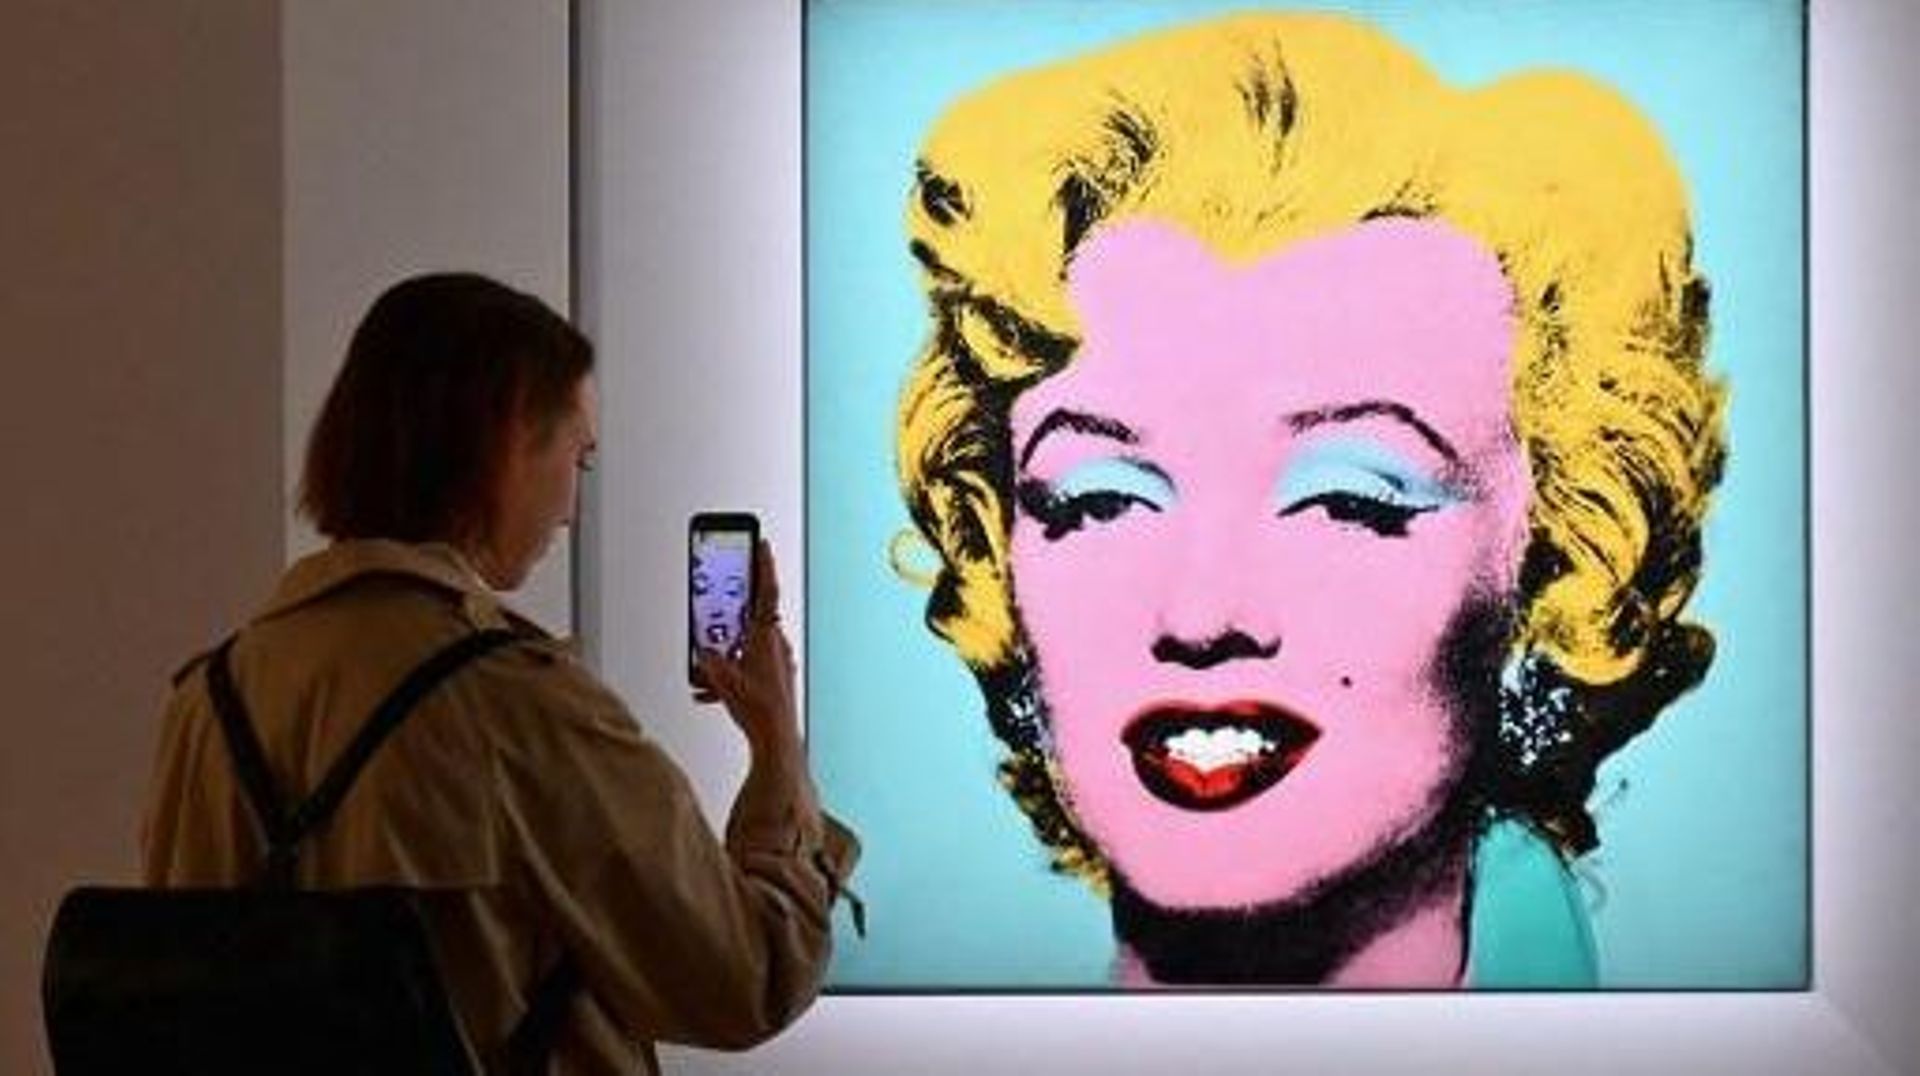 Un portrait de Marilyn Monroe par Warhol vendu aux enchères 195 millions de dollars